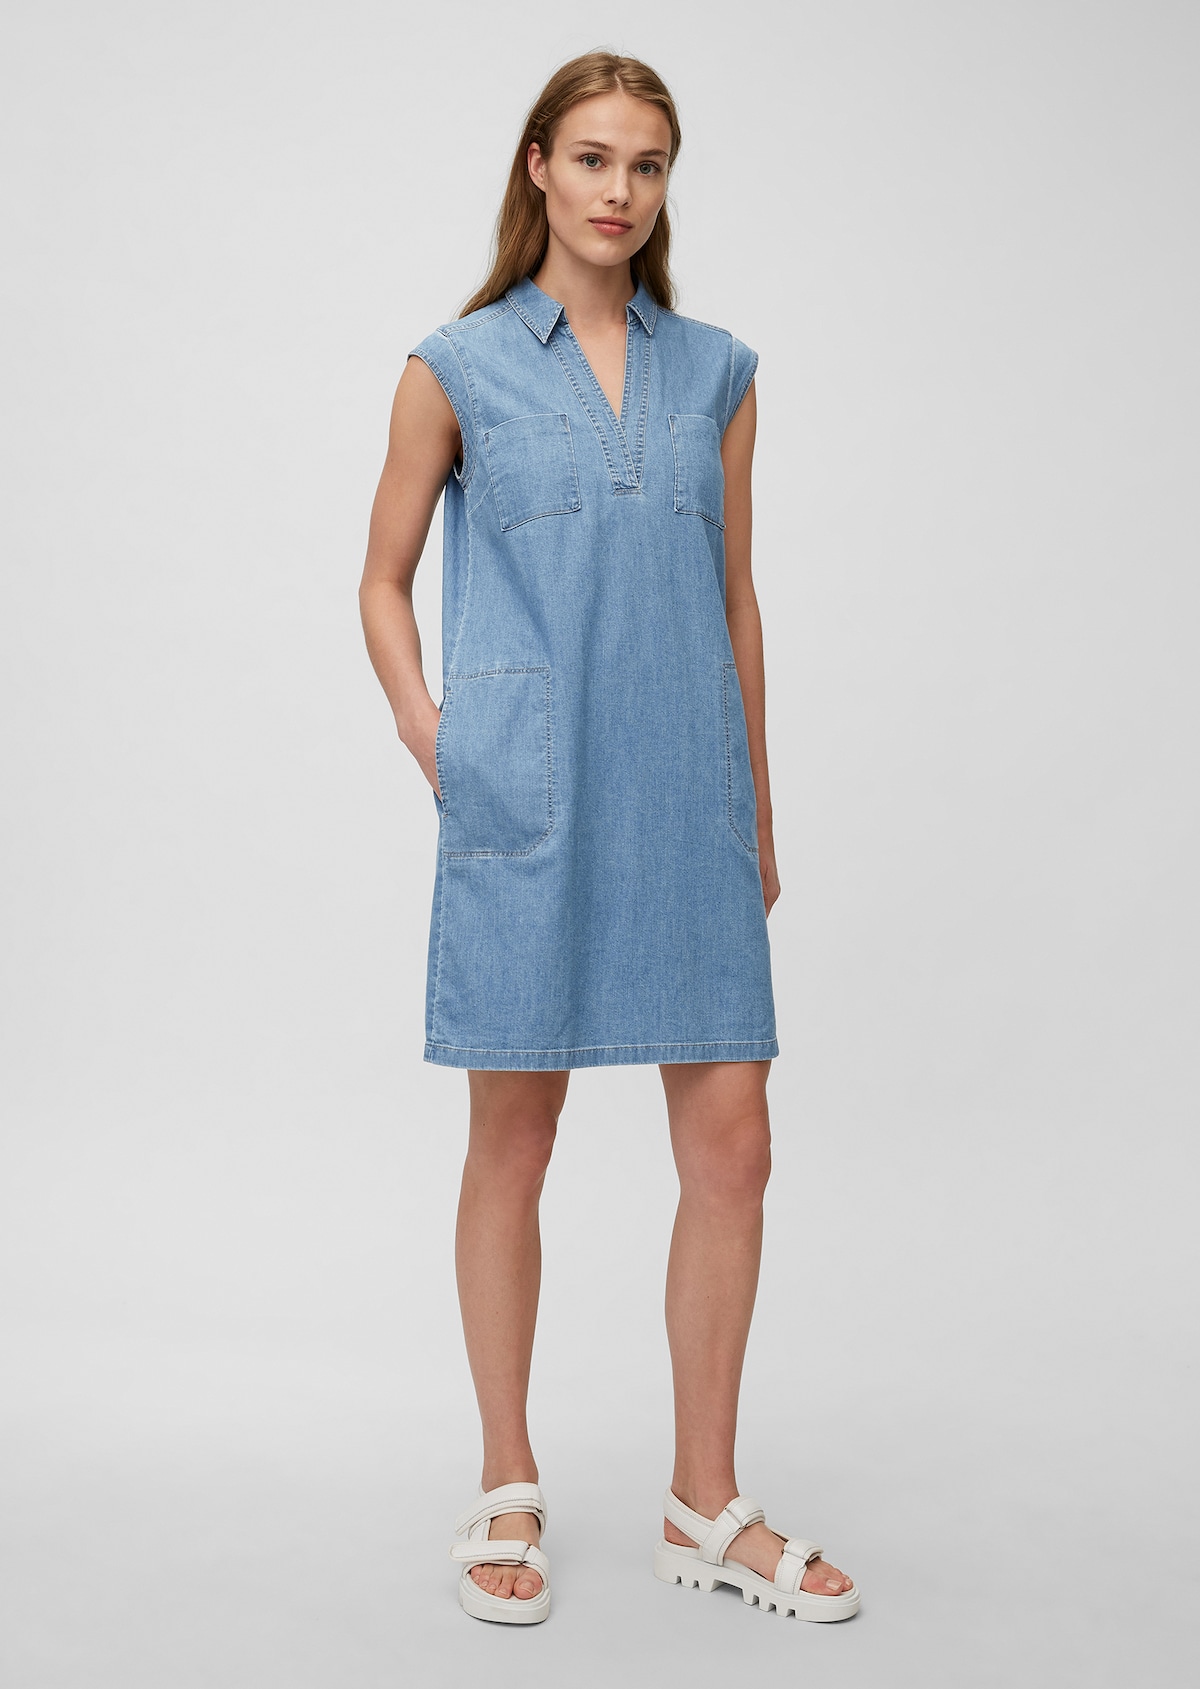 Denim dress Made from organic cotton - blue | Dresses | MARC O’POLO